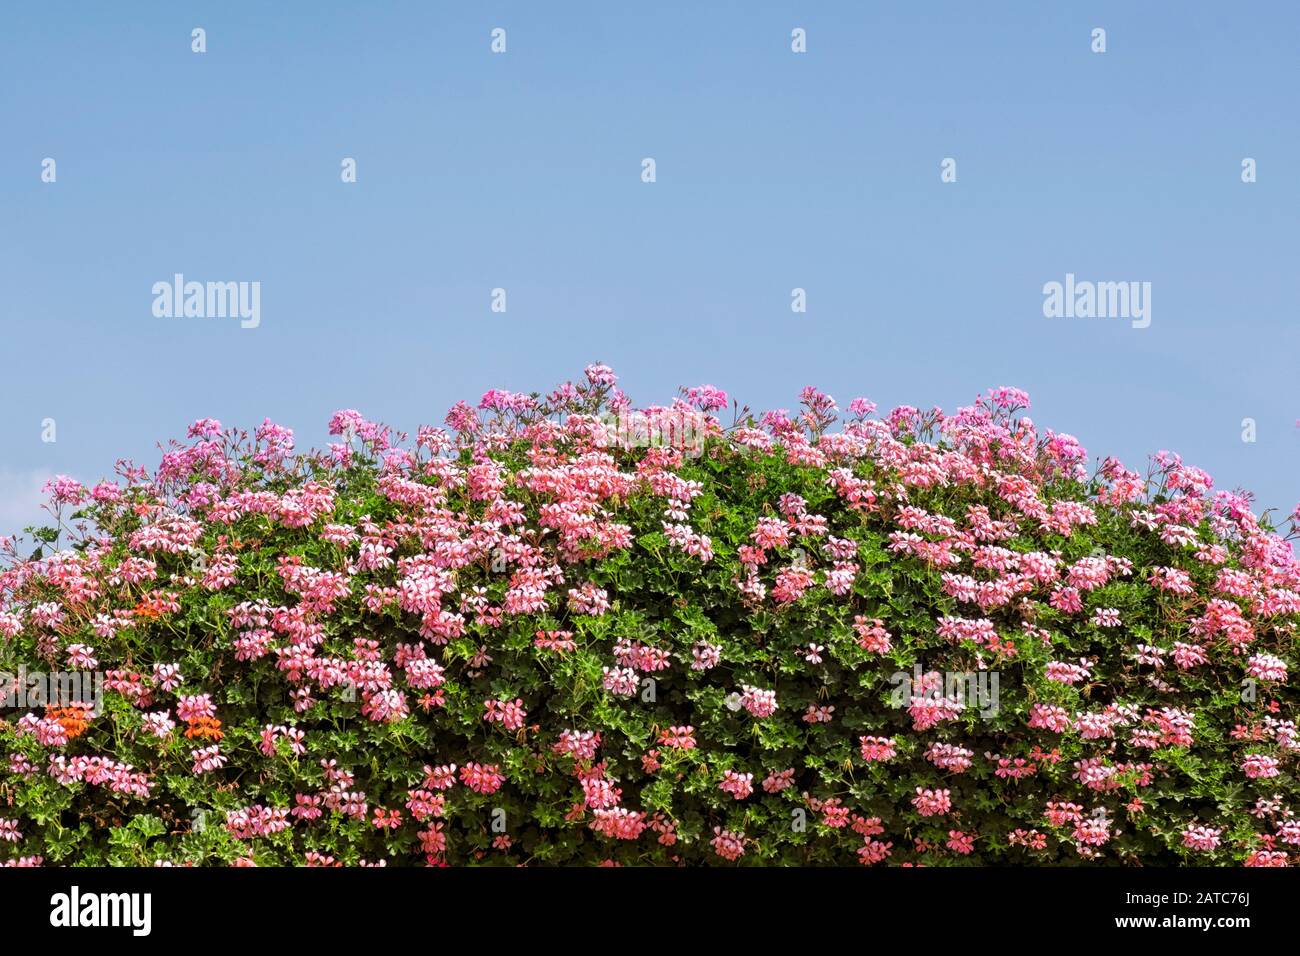 Tumulo di fiori in fiore in un giorno d'estate Foto Stock